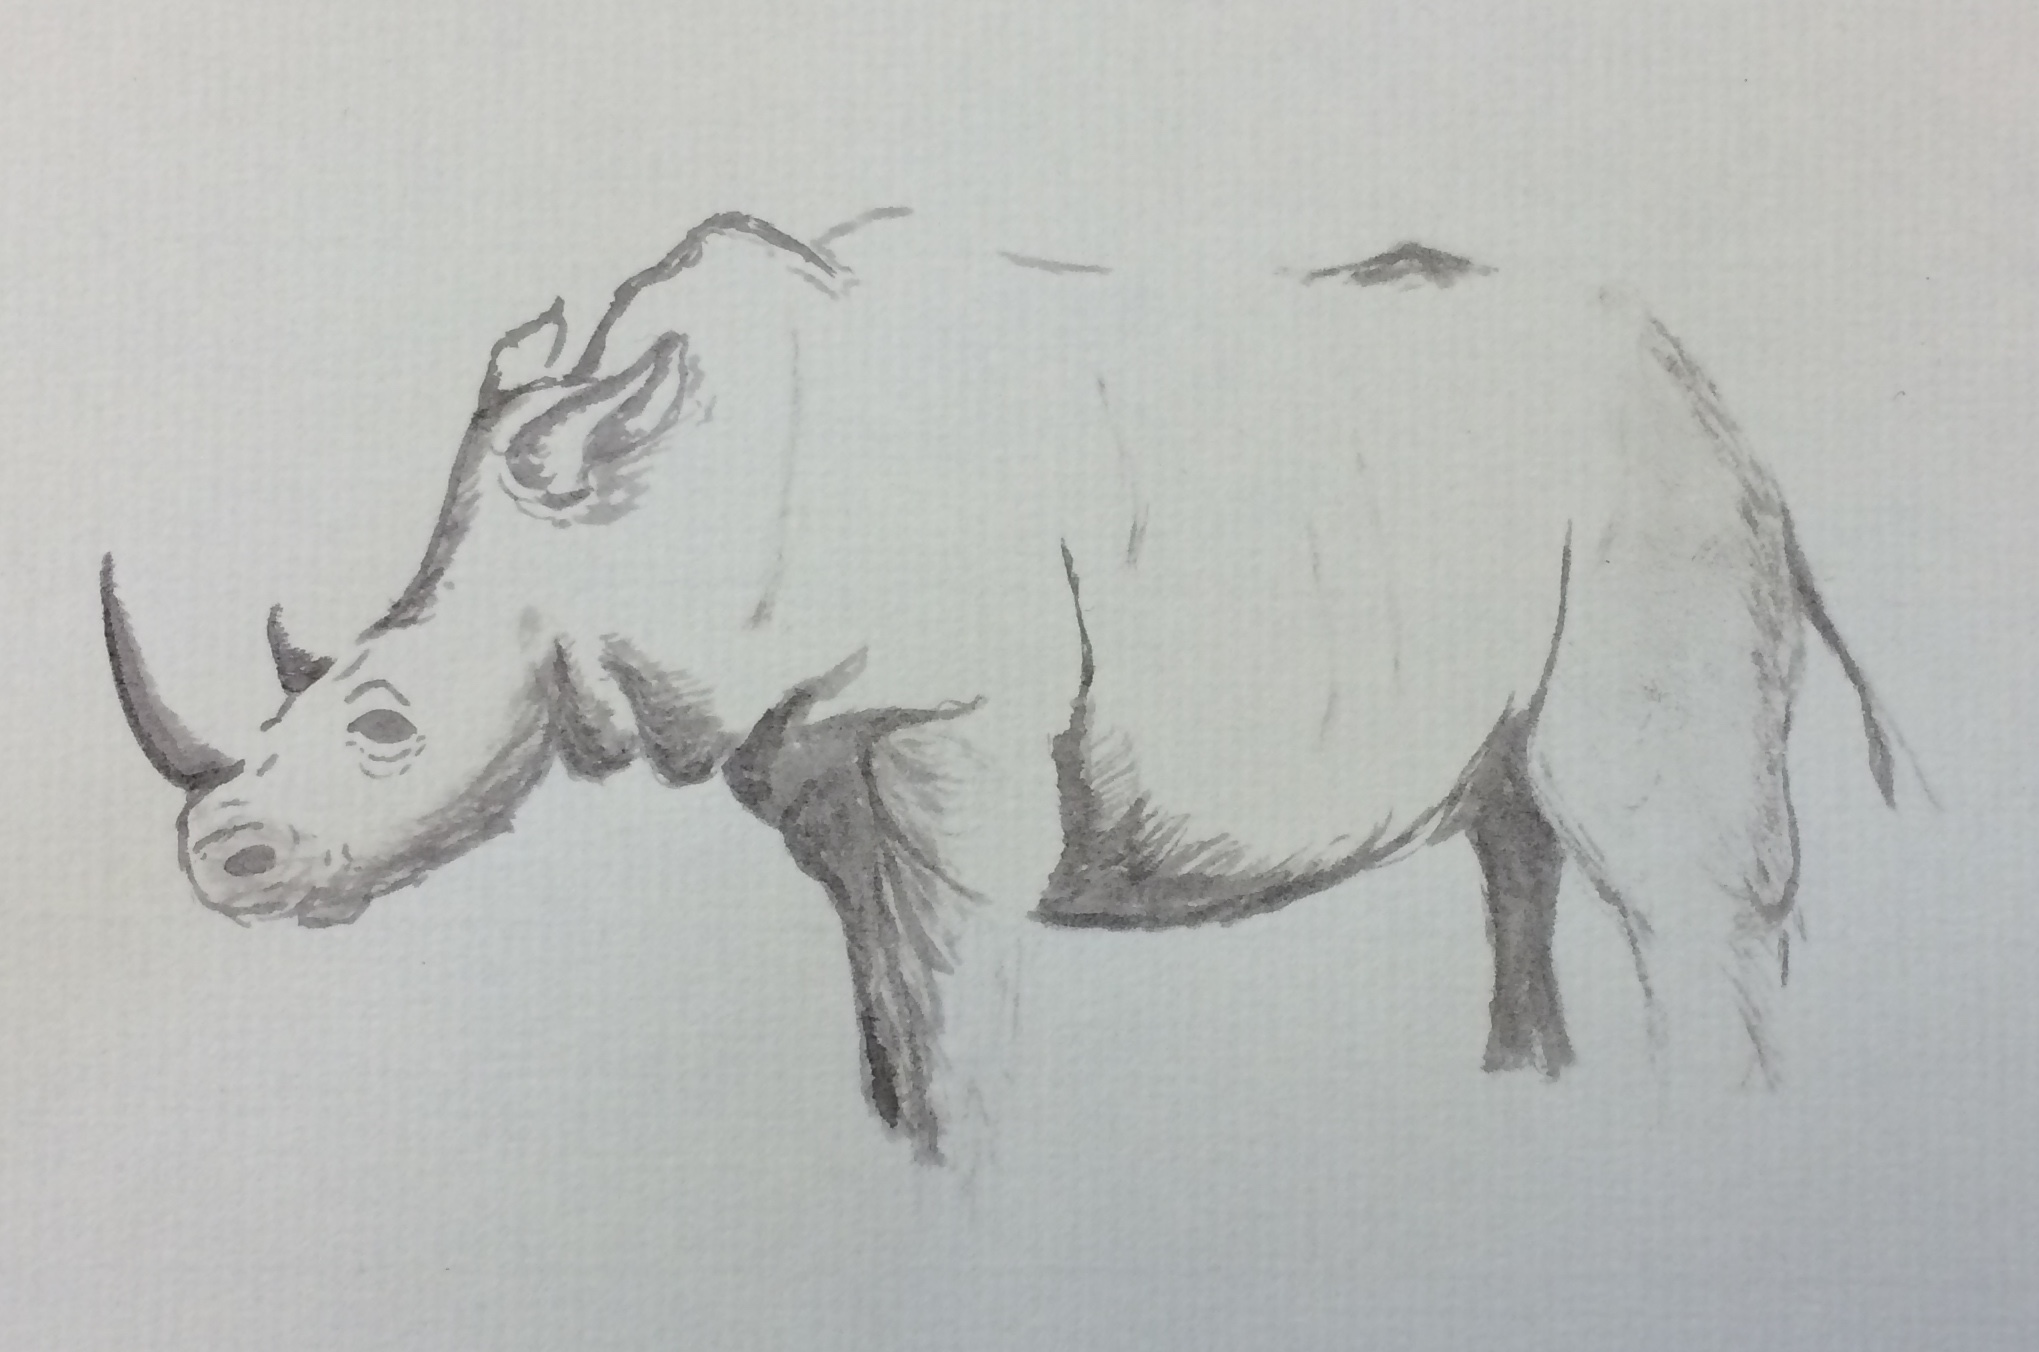 A sketch of a rhino